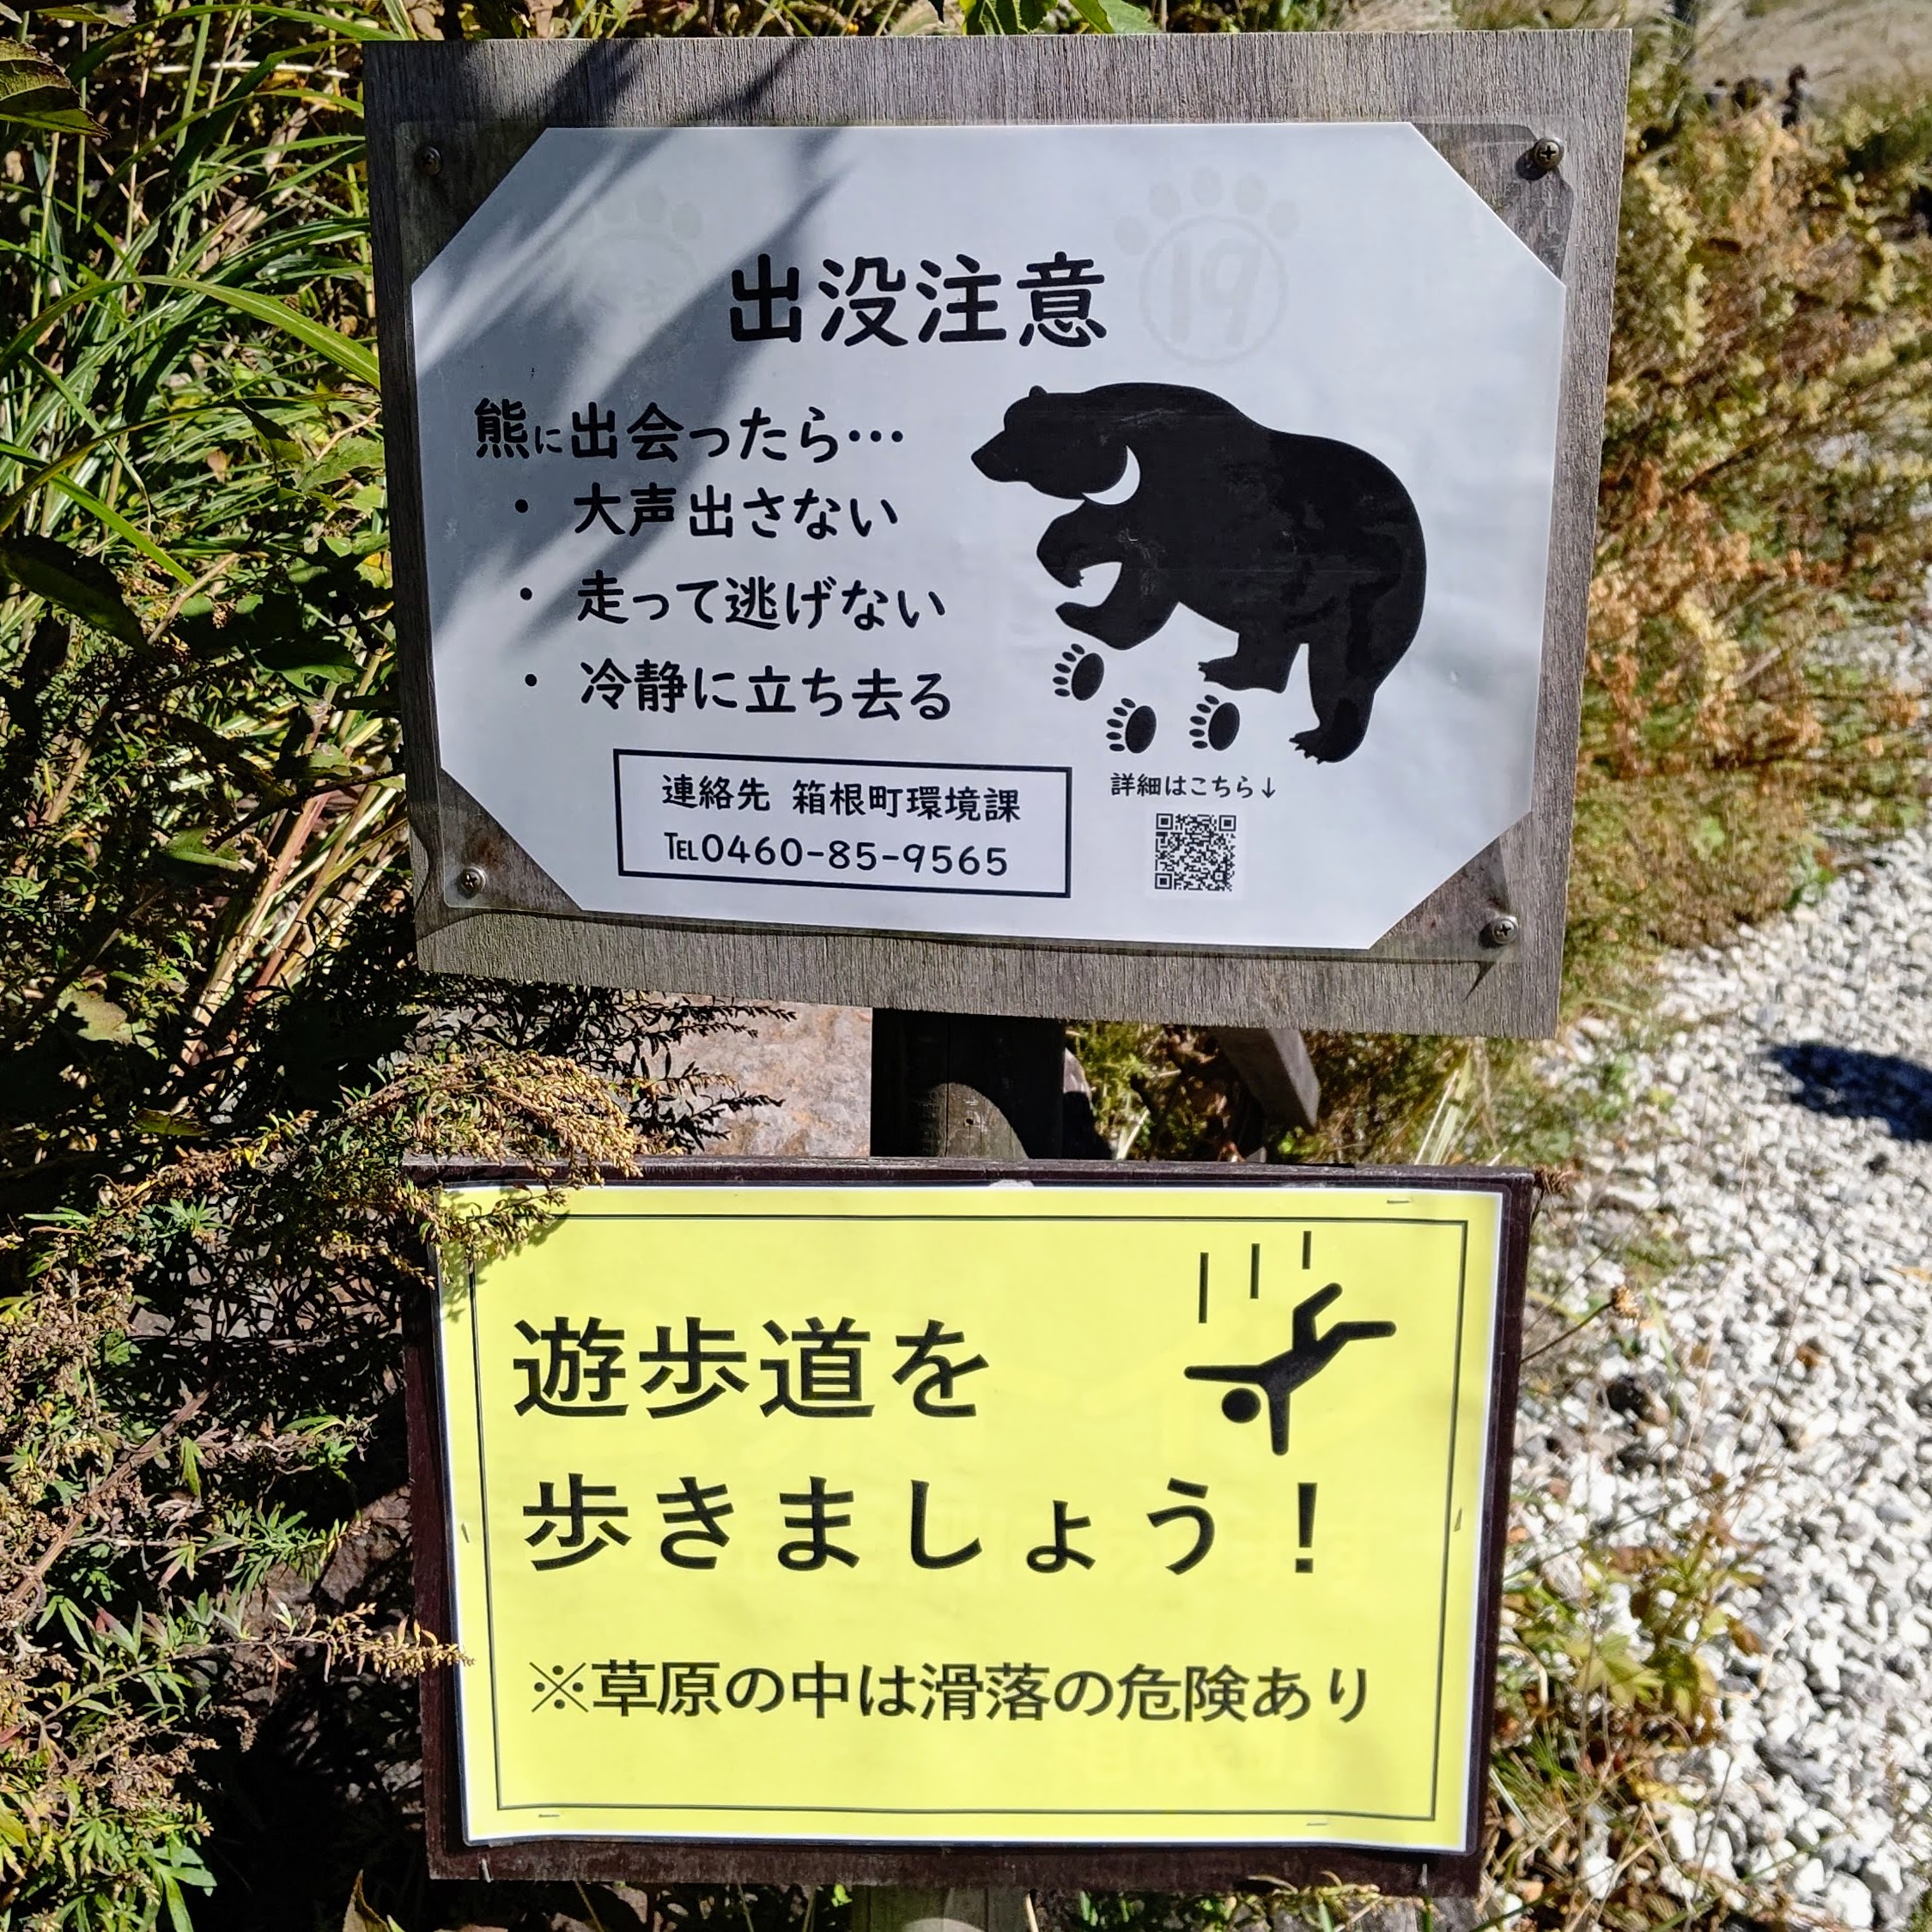 神奈川県足柄下郡 仙石原すすき草原 入口 熊出没注意